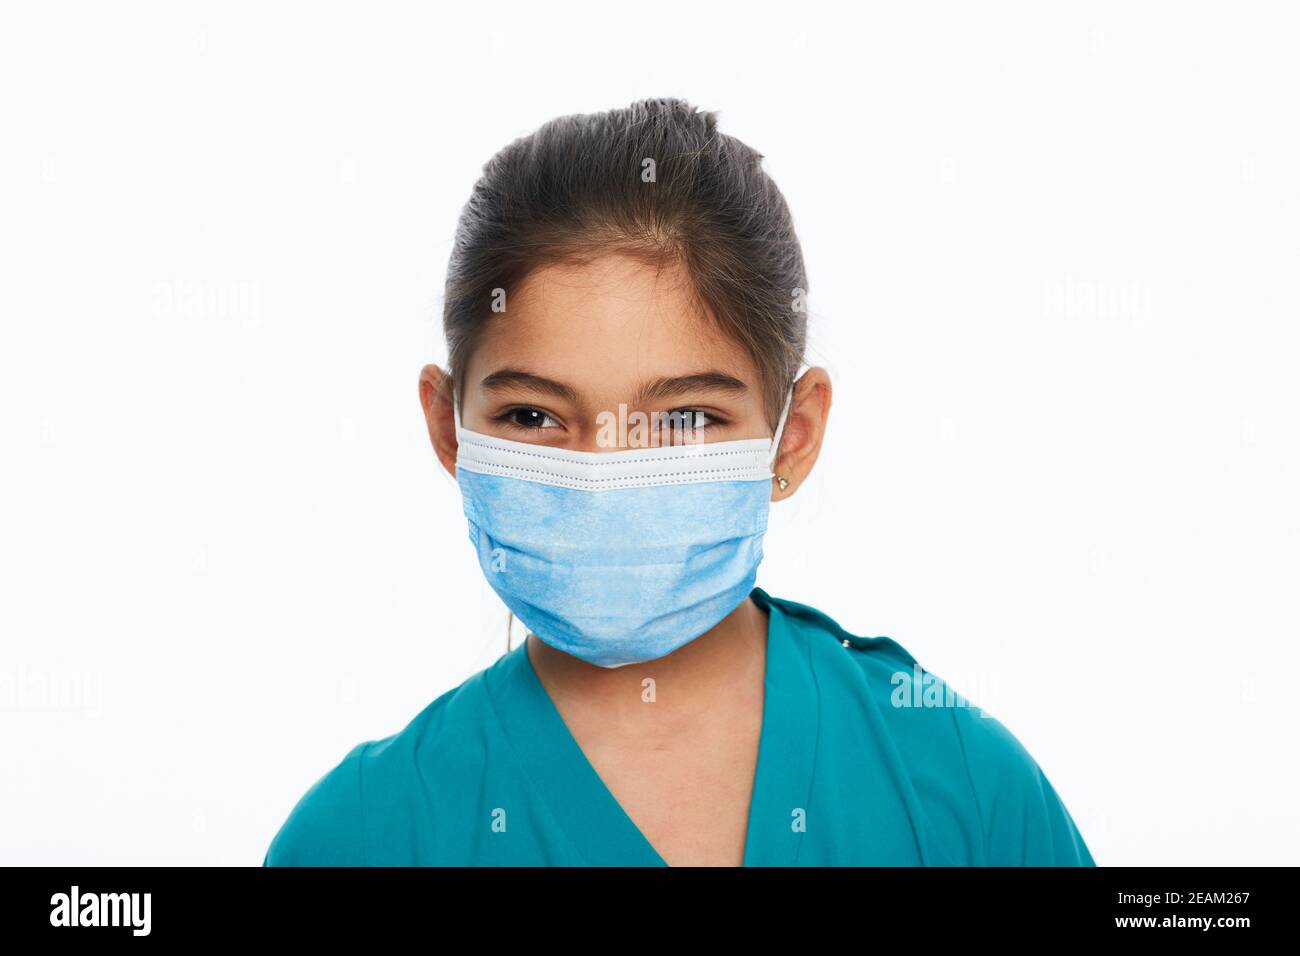 Ragazza mista da corsa con maschera medica protettiva durante una pandemia globale, isolata su bianco Foto Stock